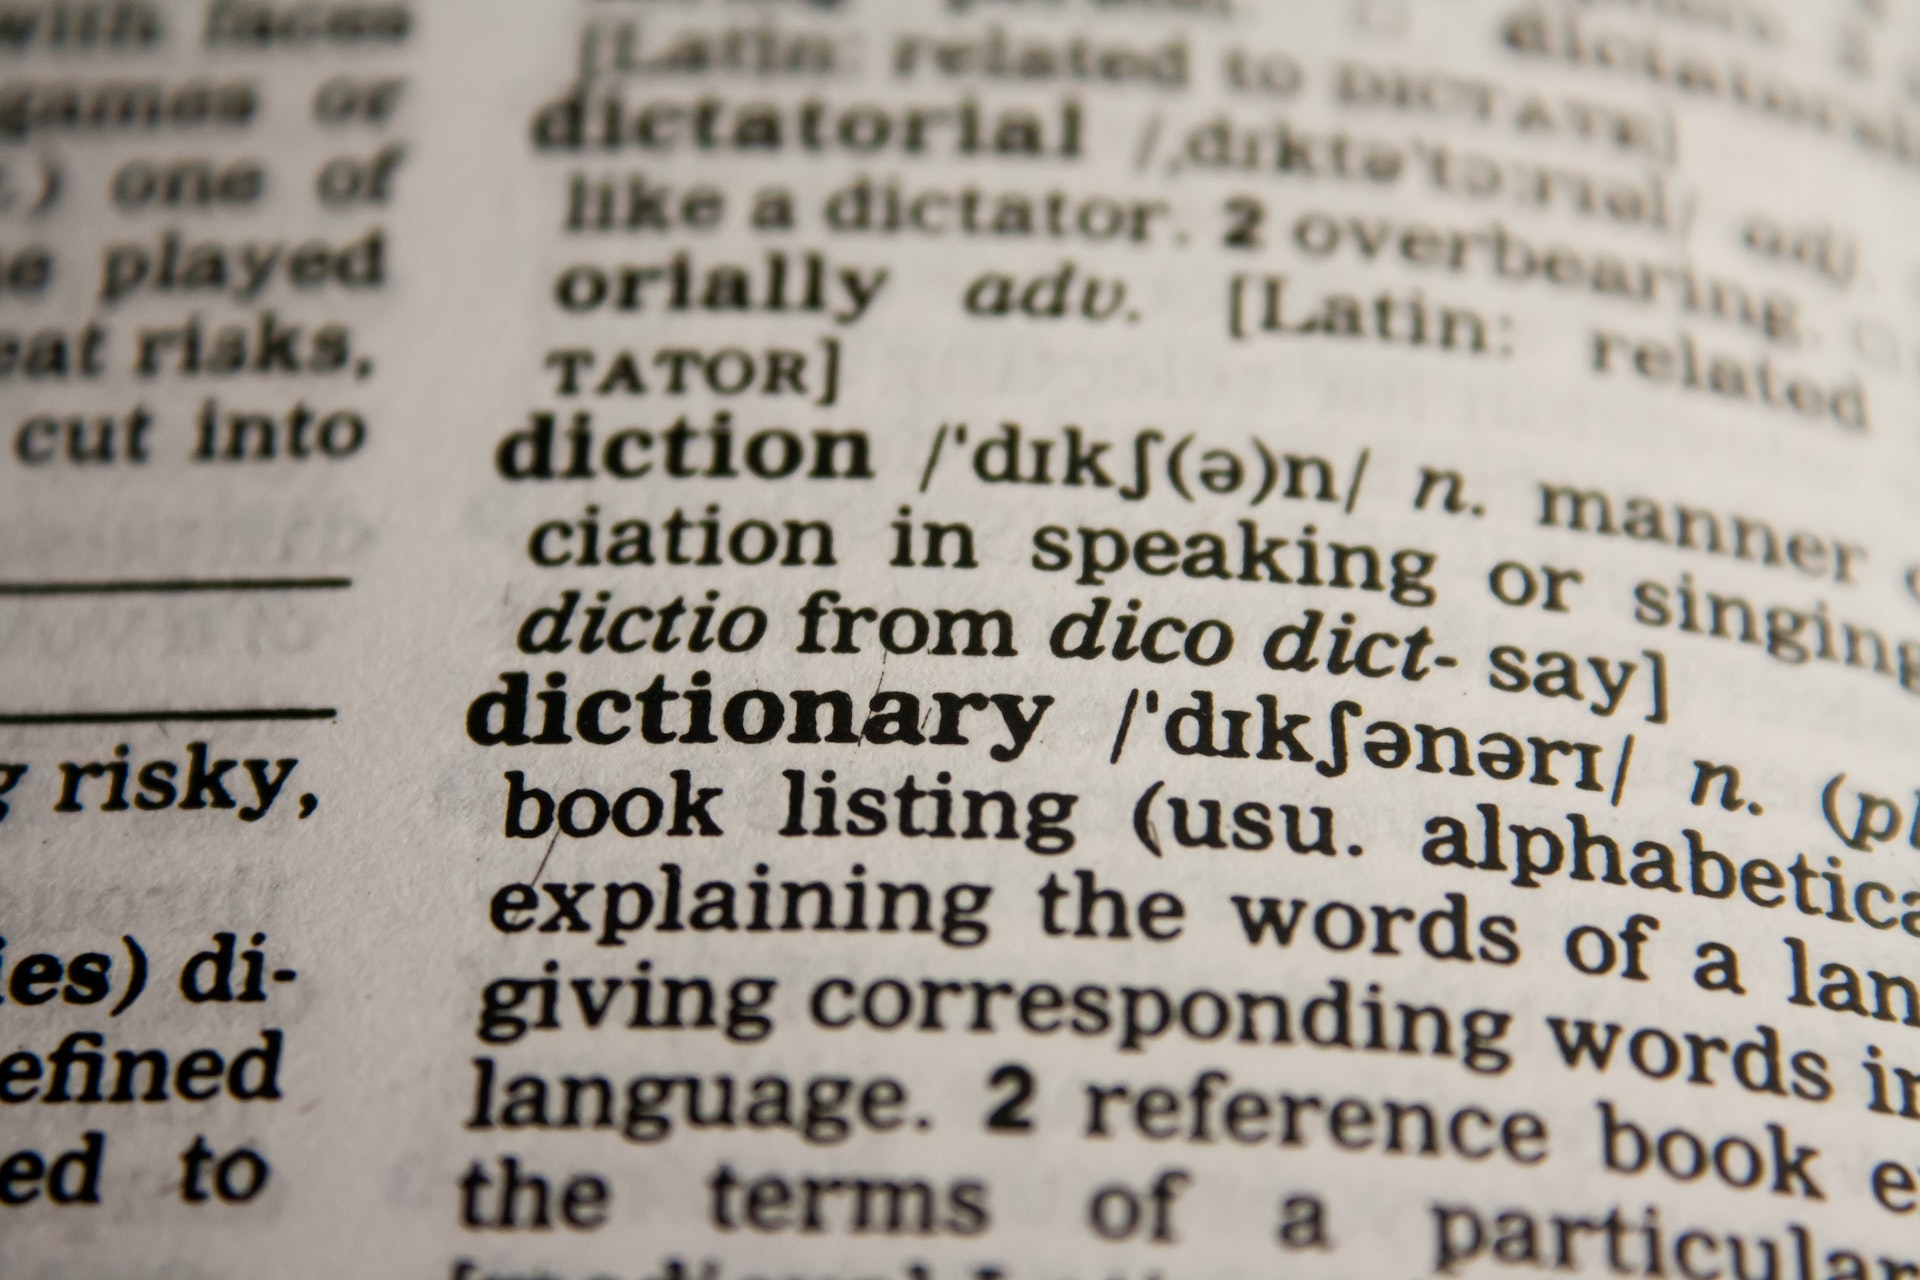 Imagem para o artigo sobre dicionários on-line de inglês.